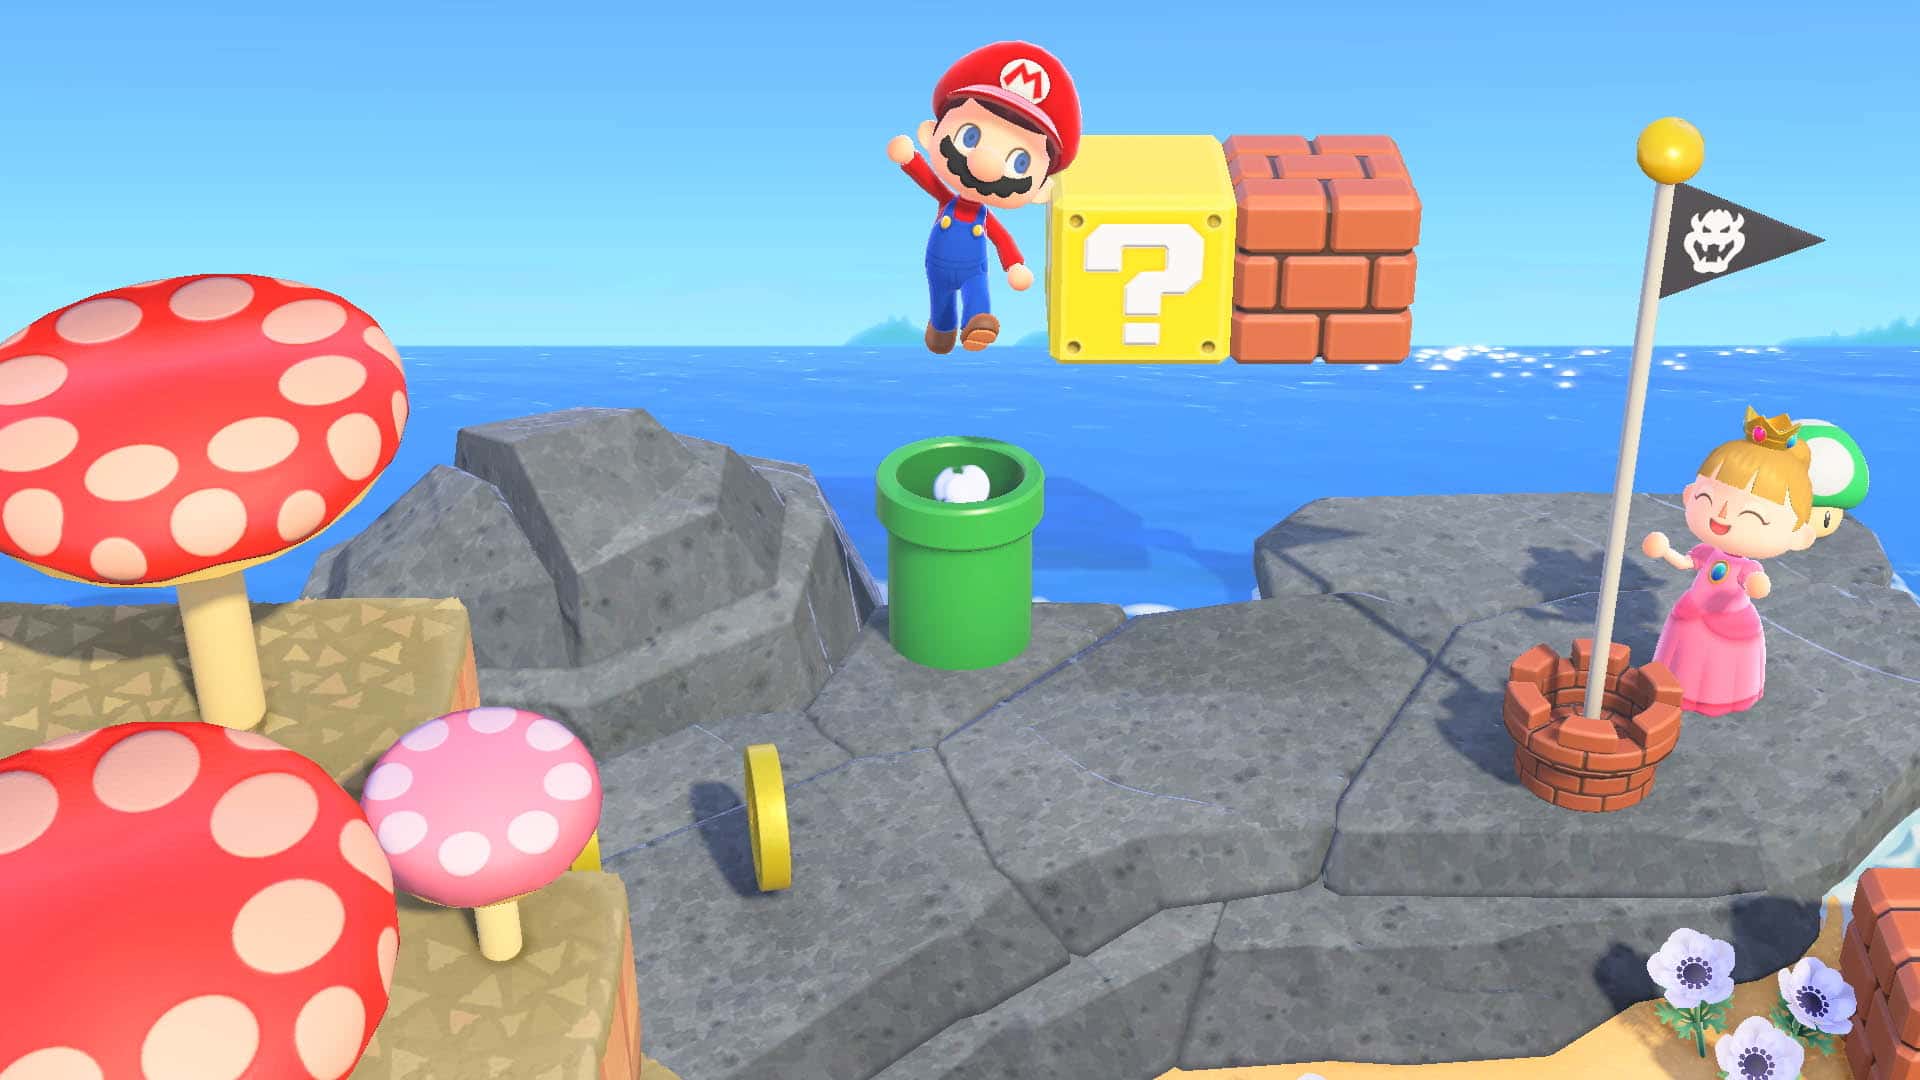 Vídeo: 5 ideas divertidas para utilizar las tuberías inspiradas en Super Mario